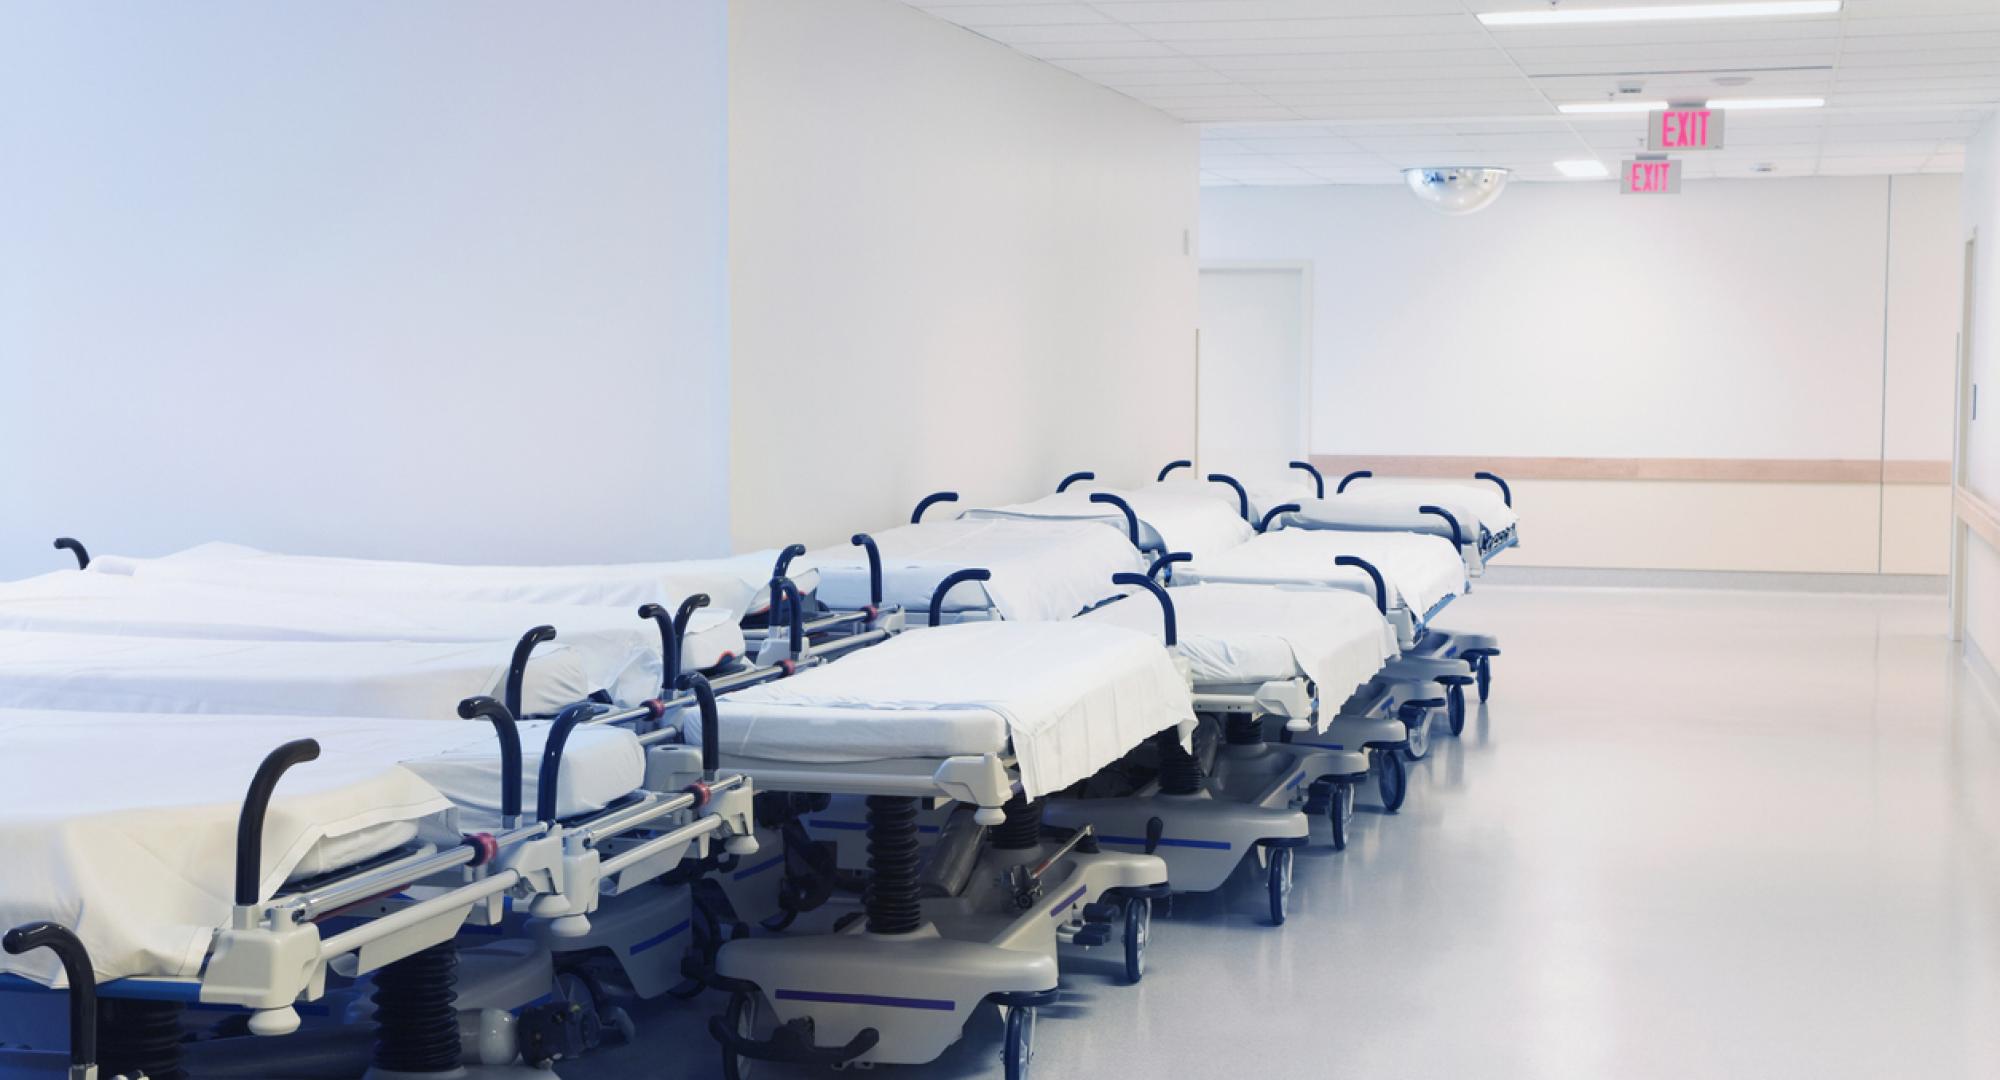 Hospital beds in corridor